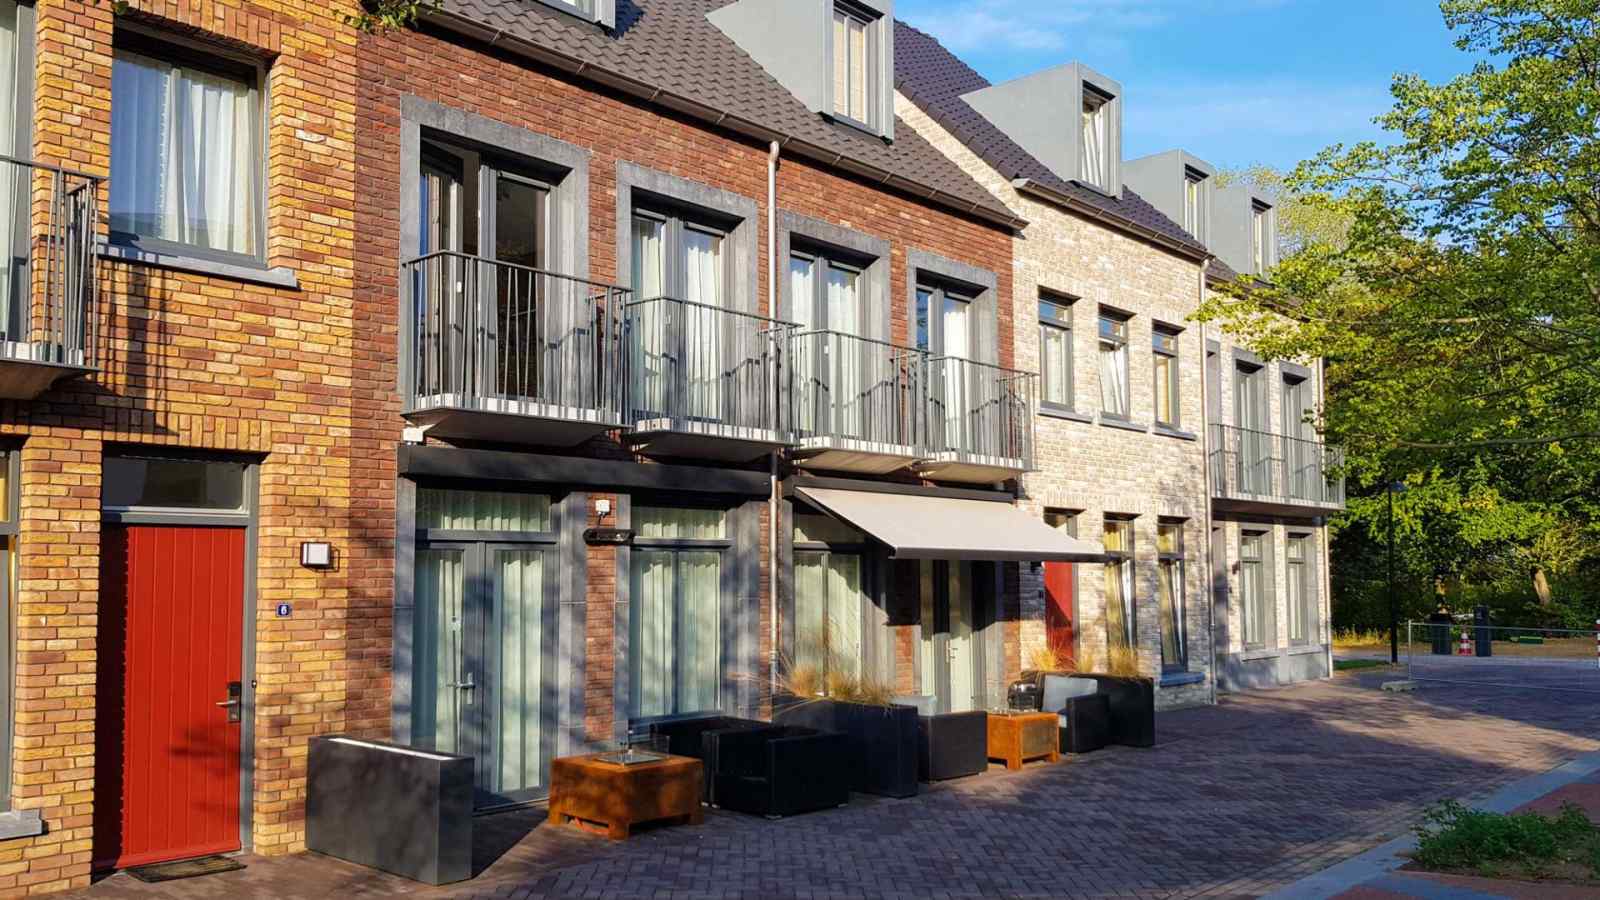 Comfort appartement voor 4 personen op Resort Maastricht in Limburg. - Nederland - Europa - Maastricht